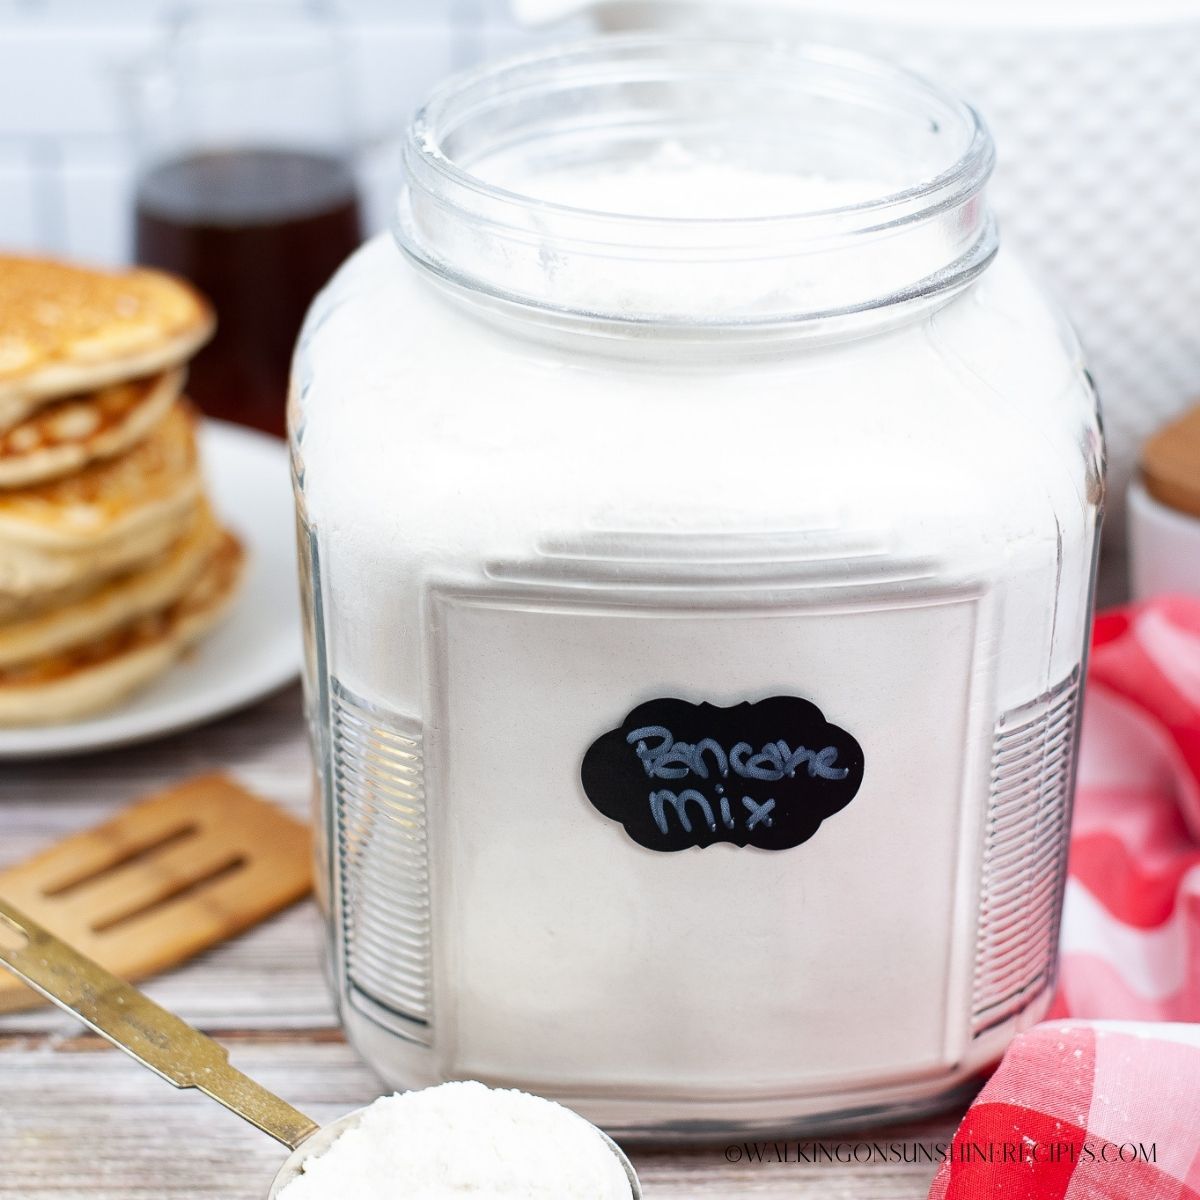 Broom Rejse åndelig Homemade Bulk Pancake Mix with Printable Labels